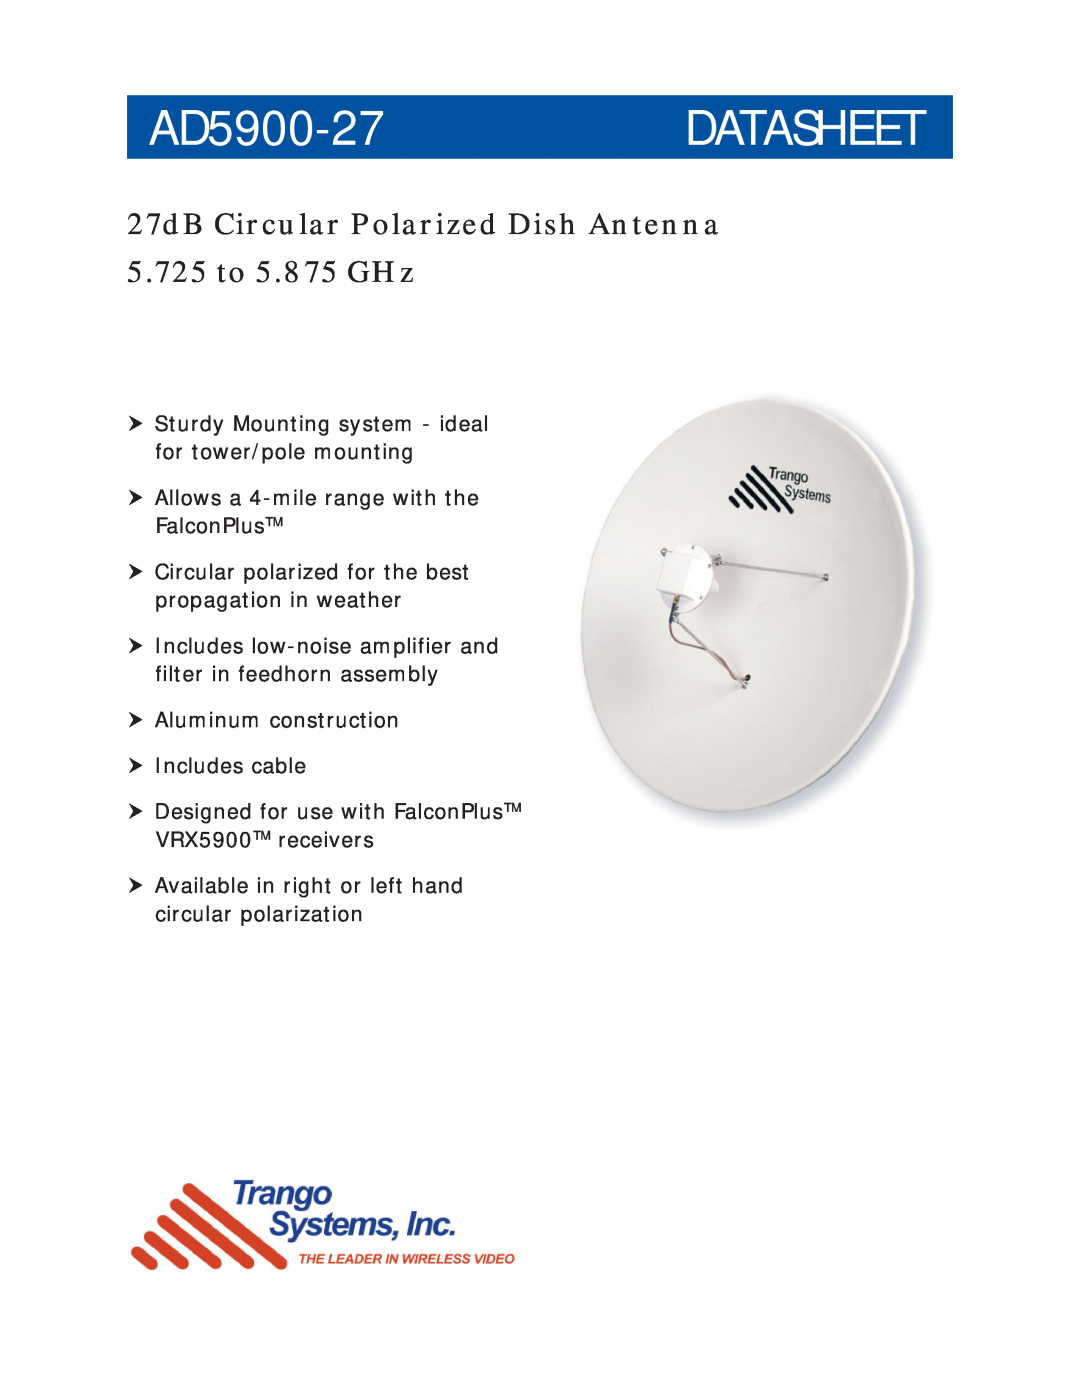 Trango Broadband manual AD5900-27DATASHEET, 27dB Circular Polarized Dish Antenna 5.725 to 5.875 GHz 